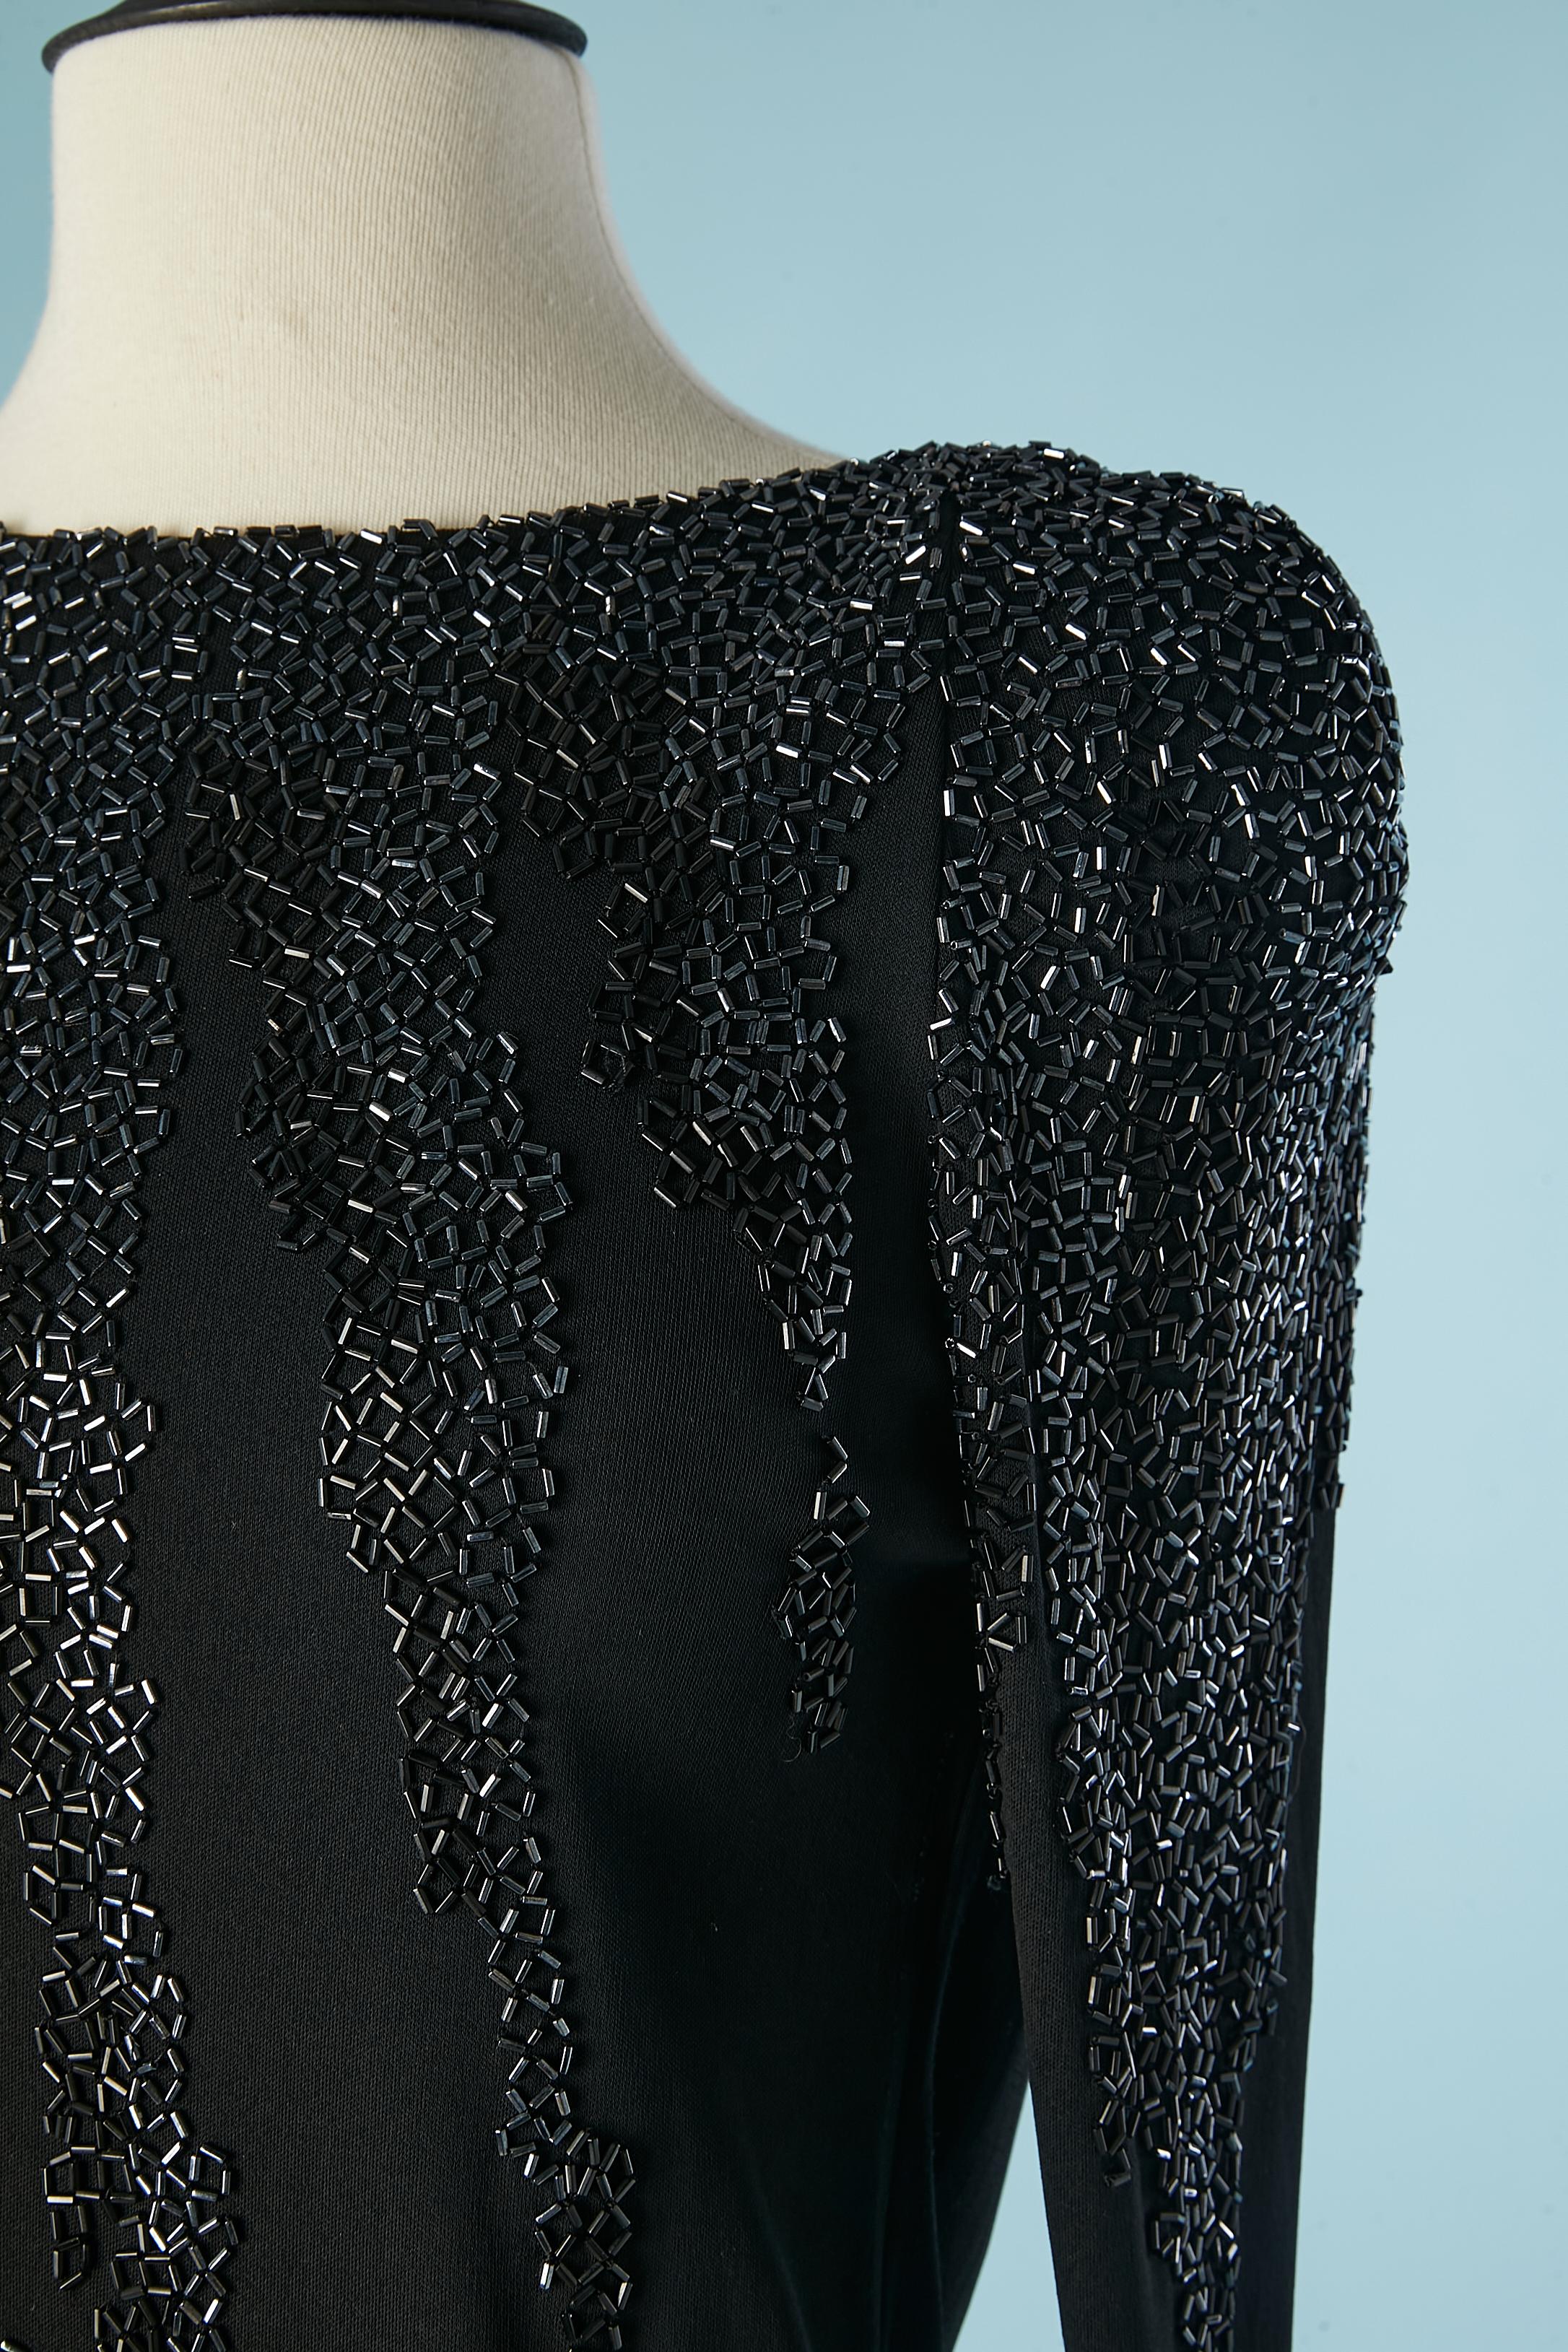 Robe de cocktail en jersey noir avec perles. Même jersey que la doublure. Epaulettes, fermeture à glissière et crochet au milieu du dos. 
Fente au milieu du dos en bas = 8 cm
TAILLE M 